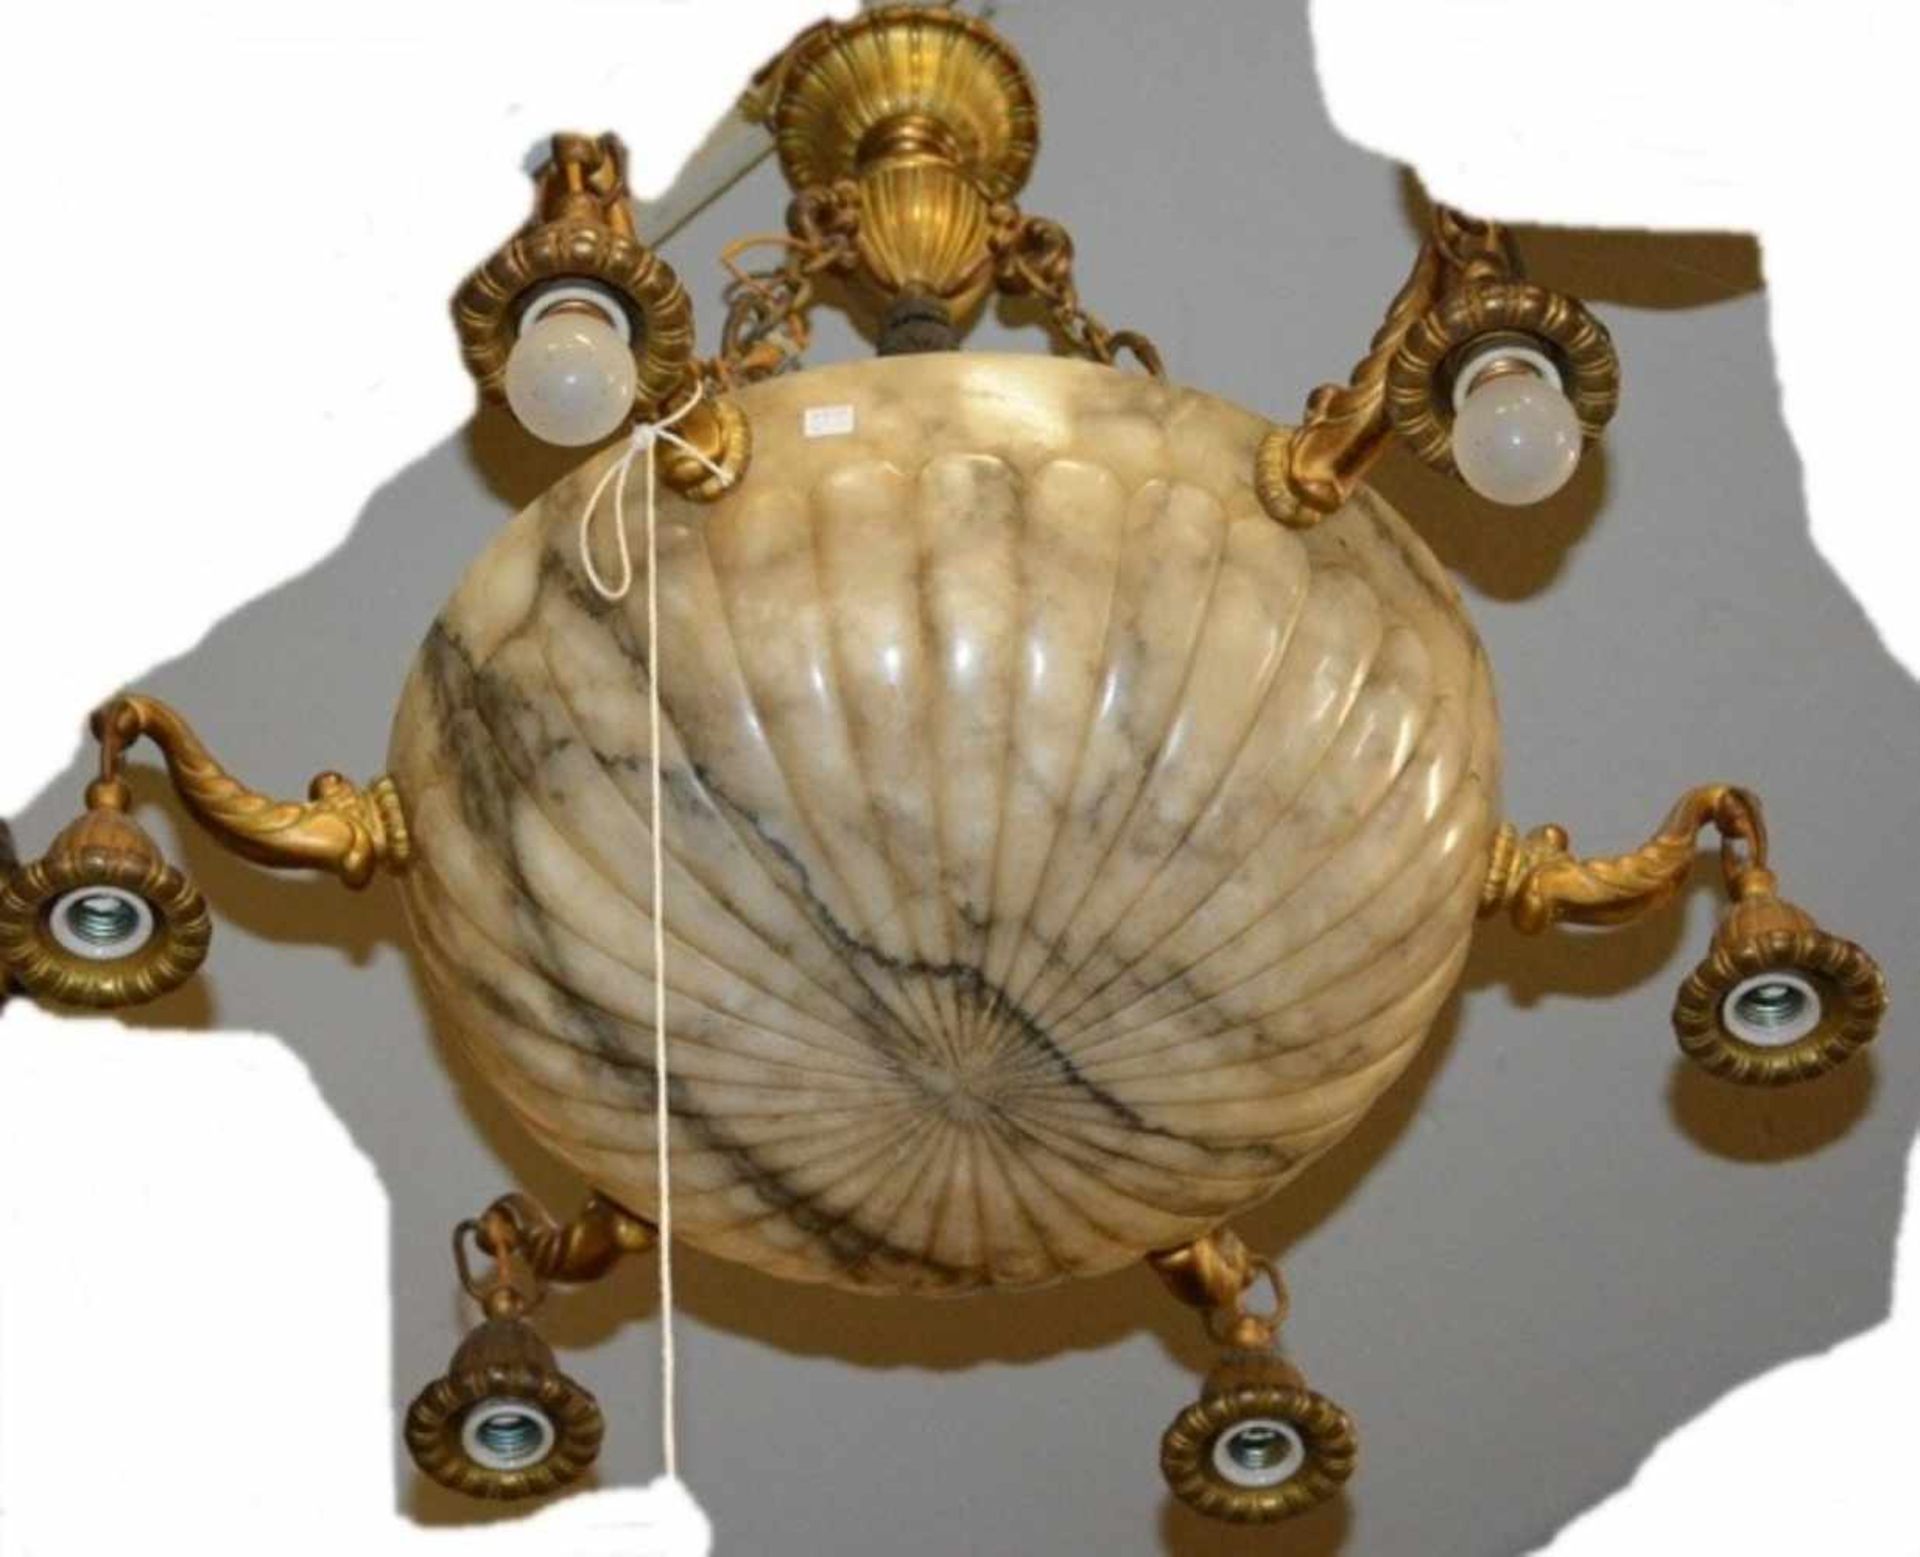 6-armige Deckenlampe mit zentrierter, großer Alabasterschale(Durchmesser 44cm)und Bronzemontur mit